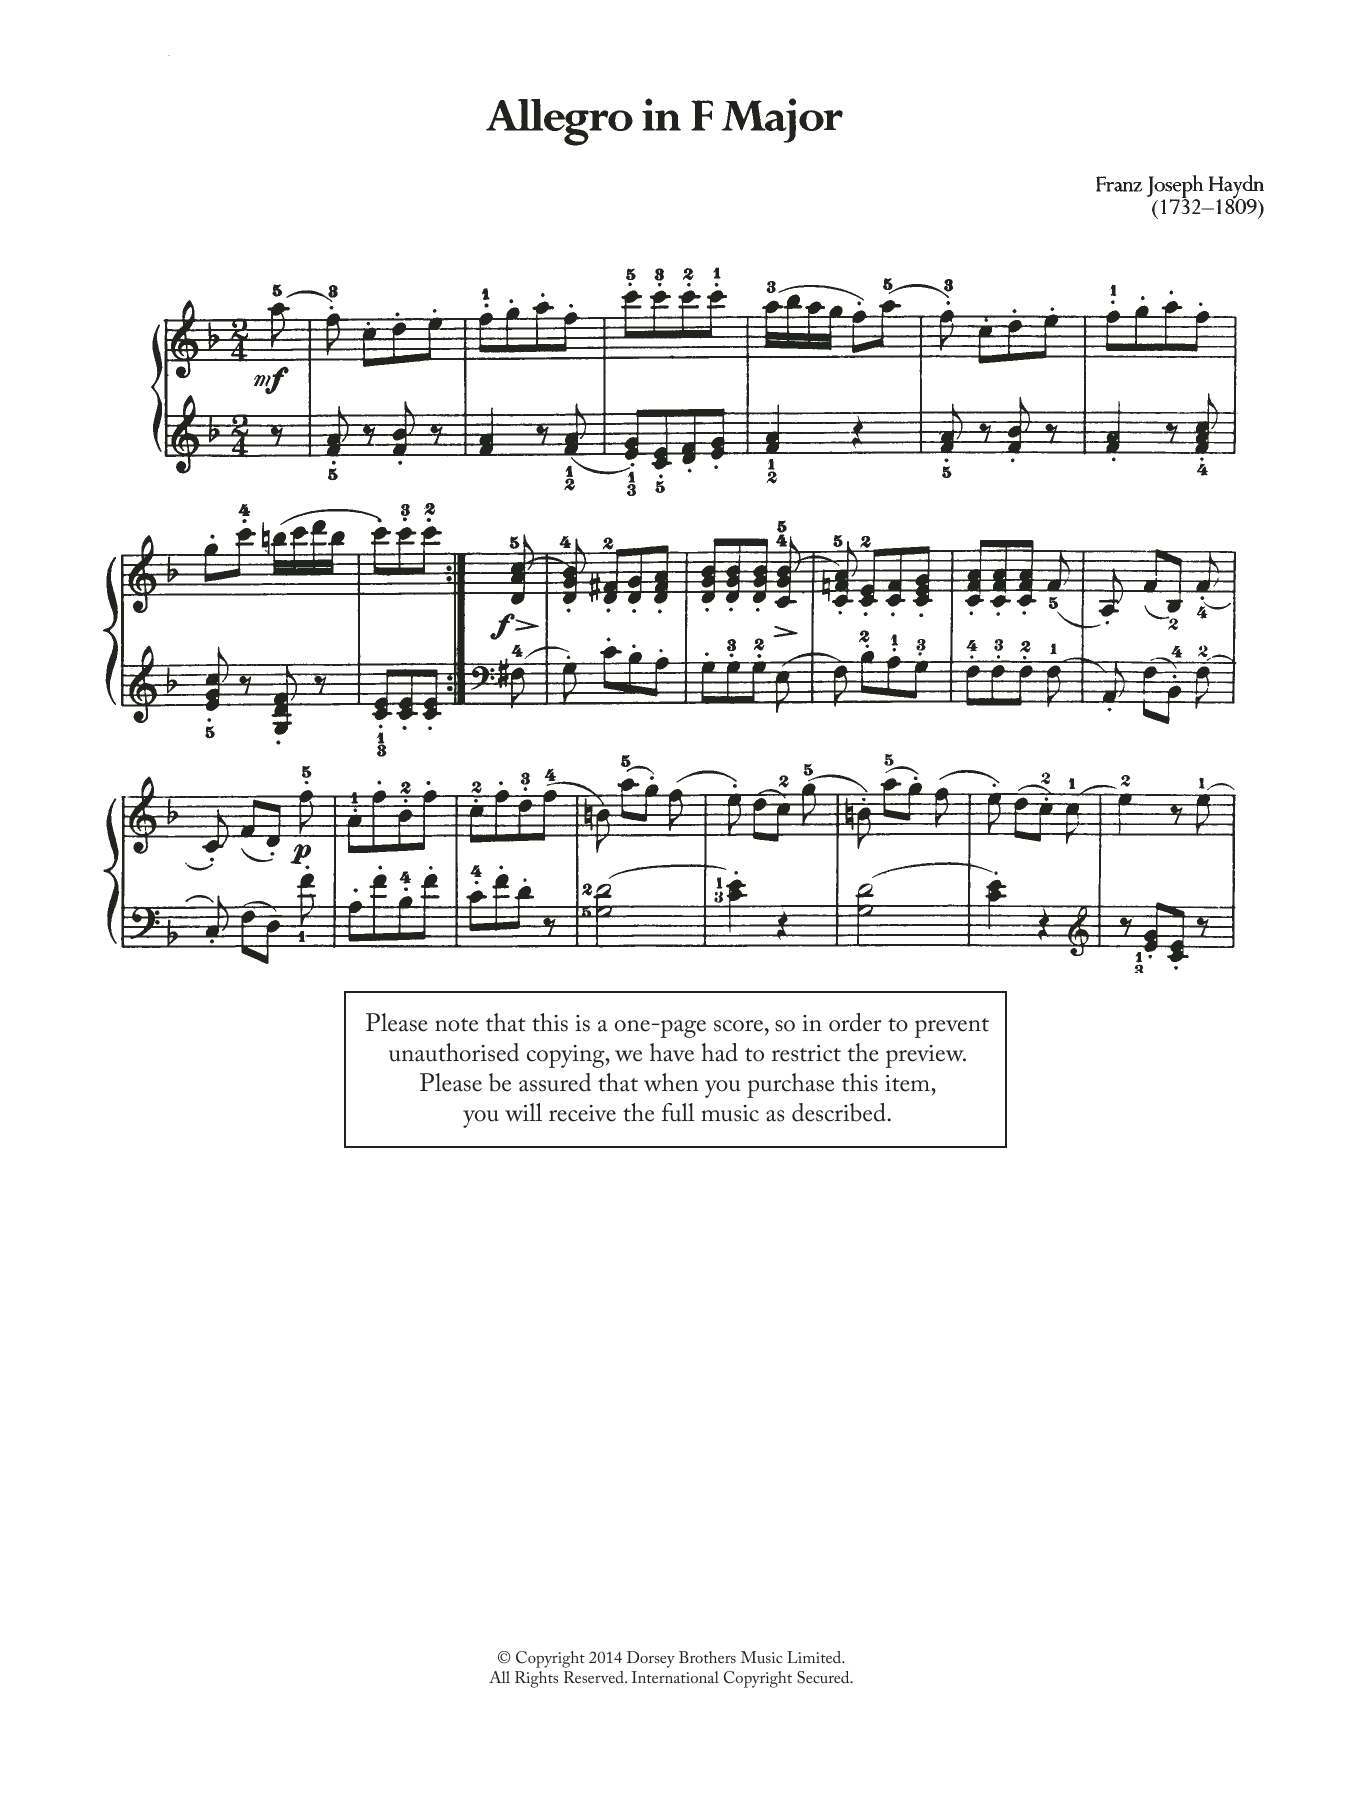 Download Franz Joseph Haydn Allegro Sheet Music